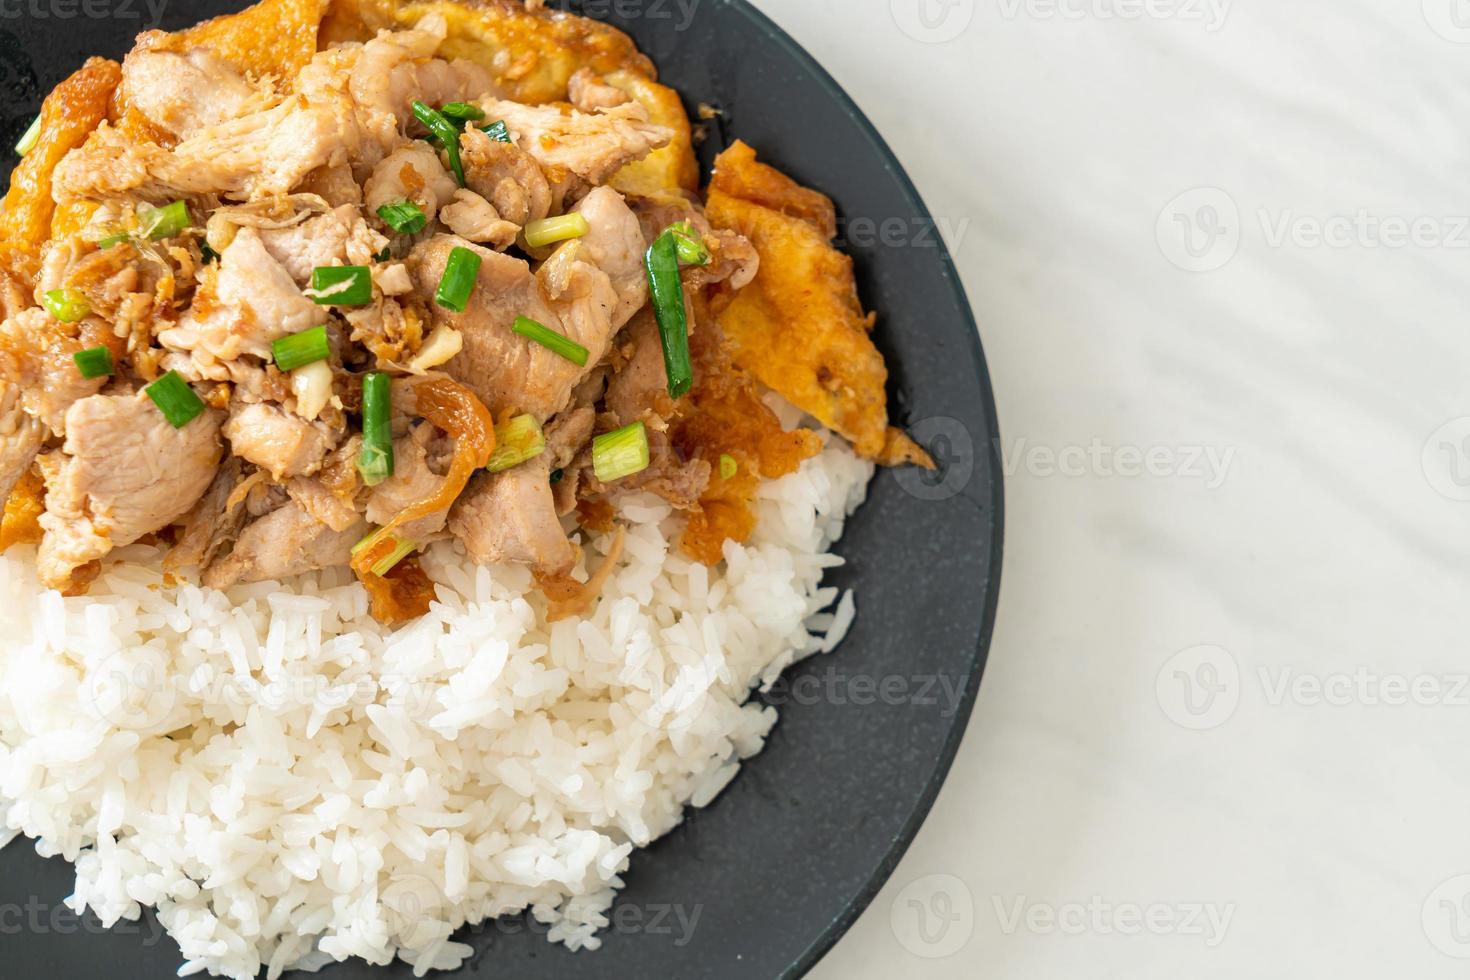 cerdo salteado con ajo y huevo cubierto de arroz - estilo de comida asiática foto